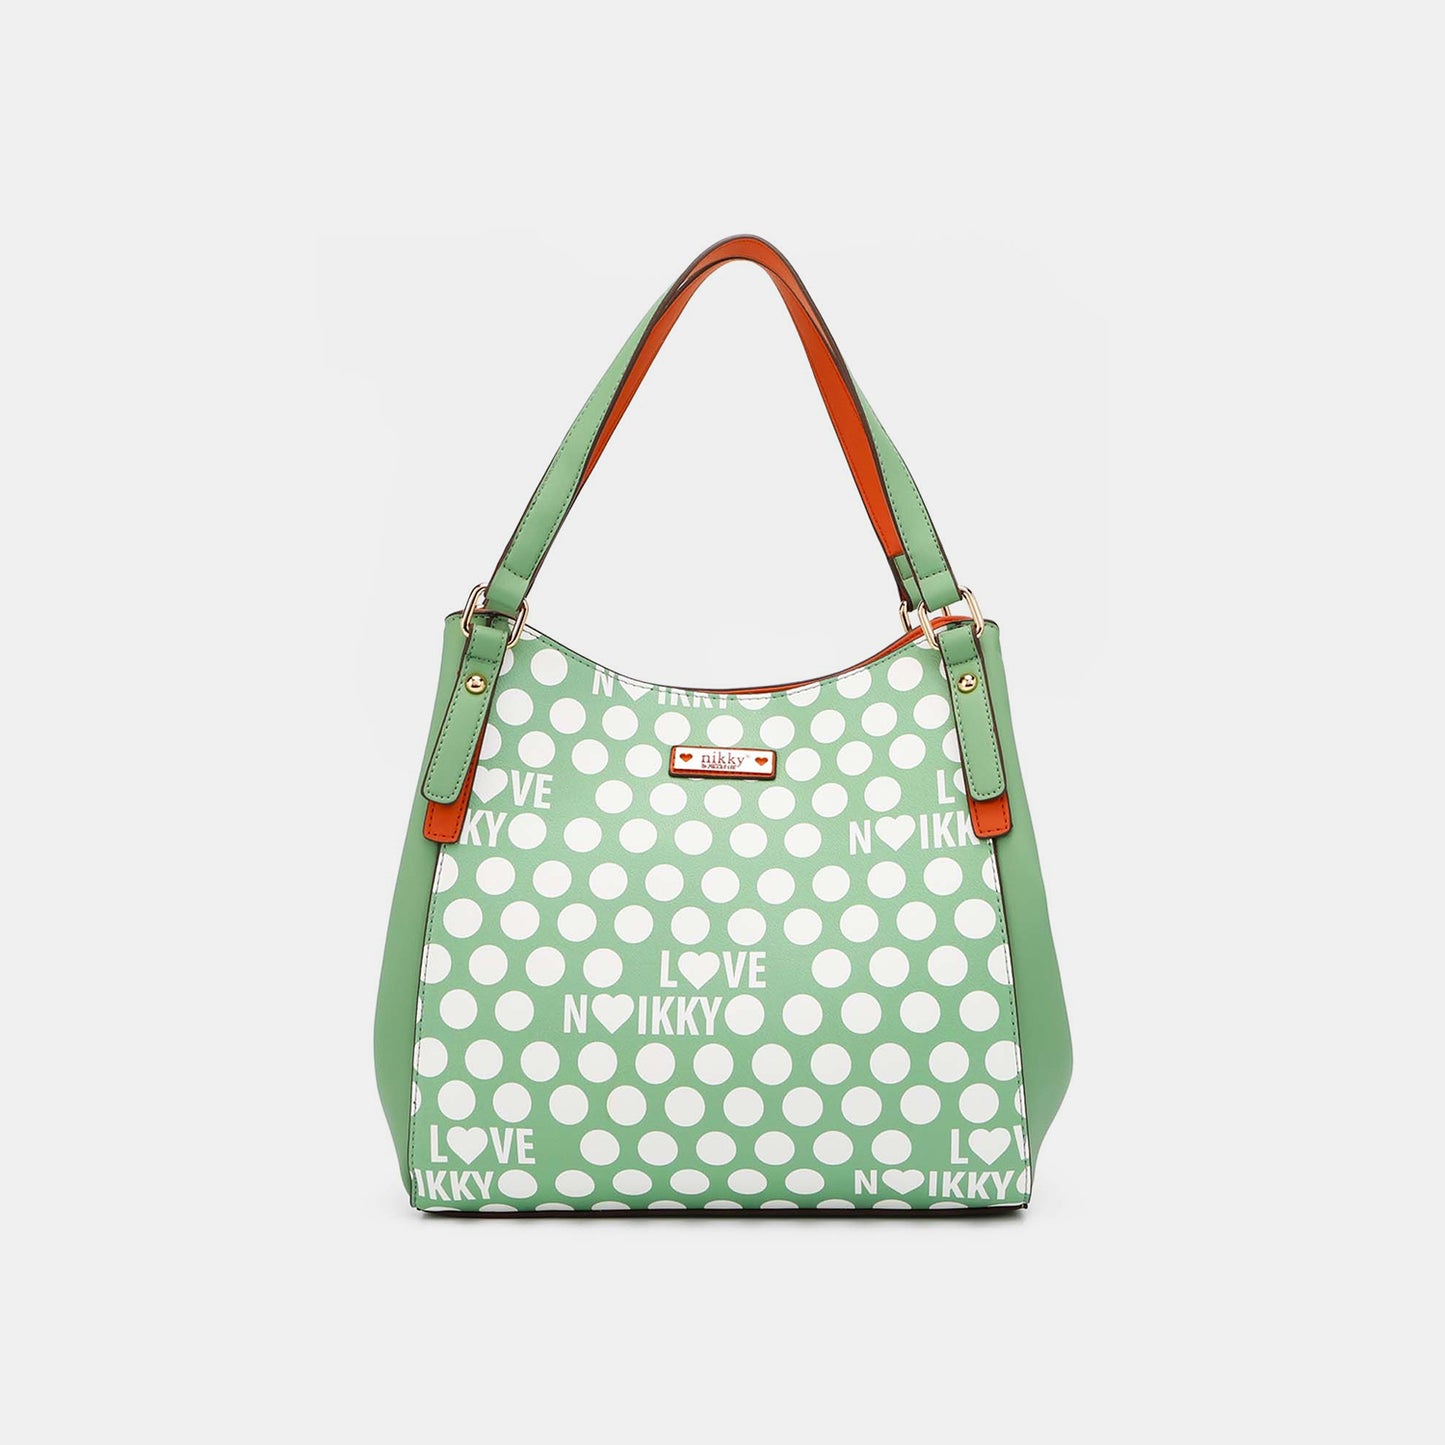 TEEK - NL Contrast Polka Dot Handbag BAG TEEK Trend Dusty Mint  